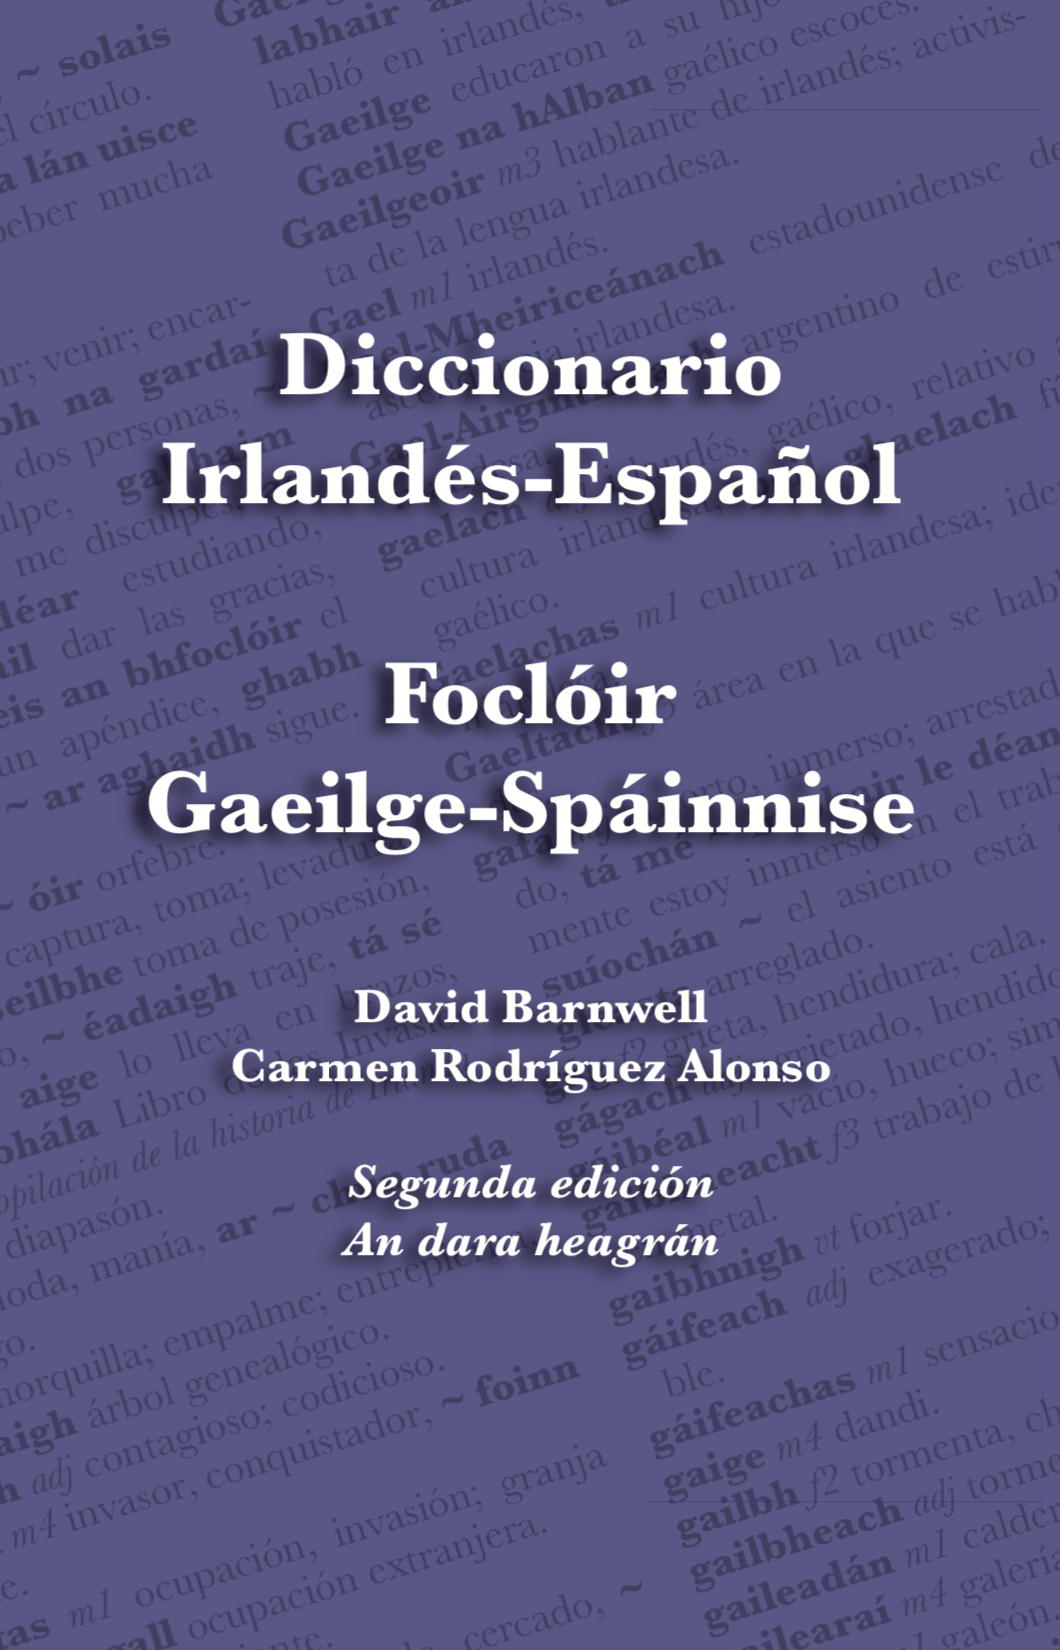 Irish-Spanish Dictionary